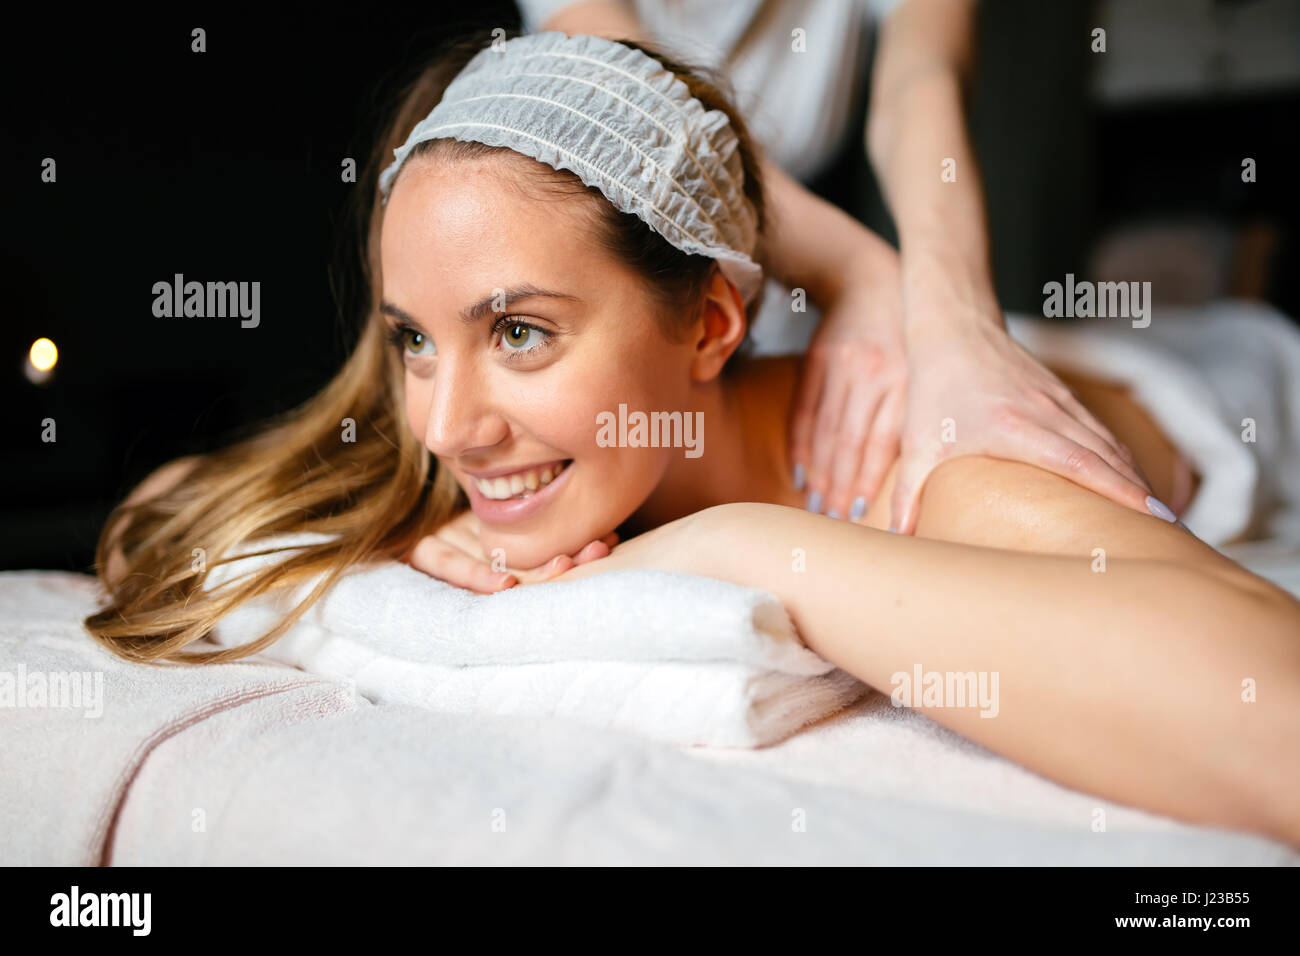 Beautiful woman enjoying massage treatment given by therapist Stock Photo